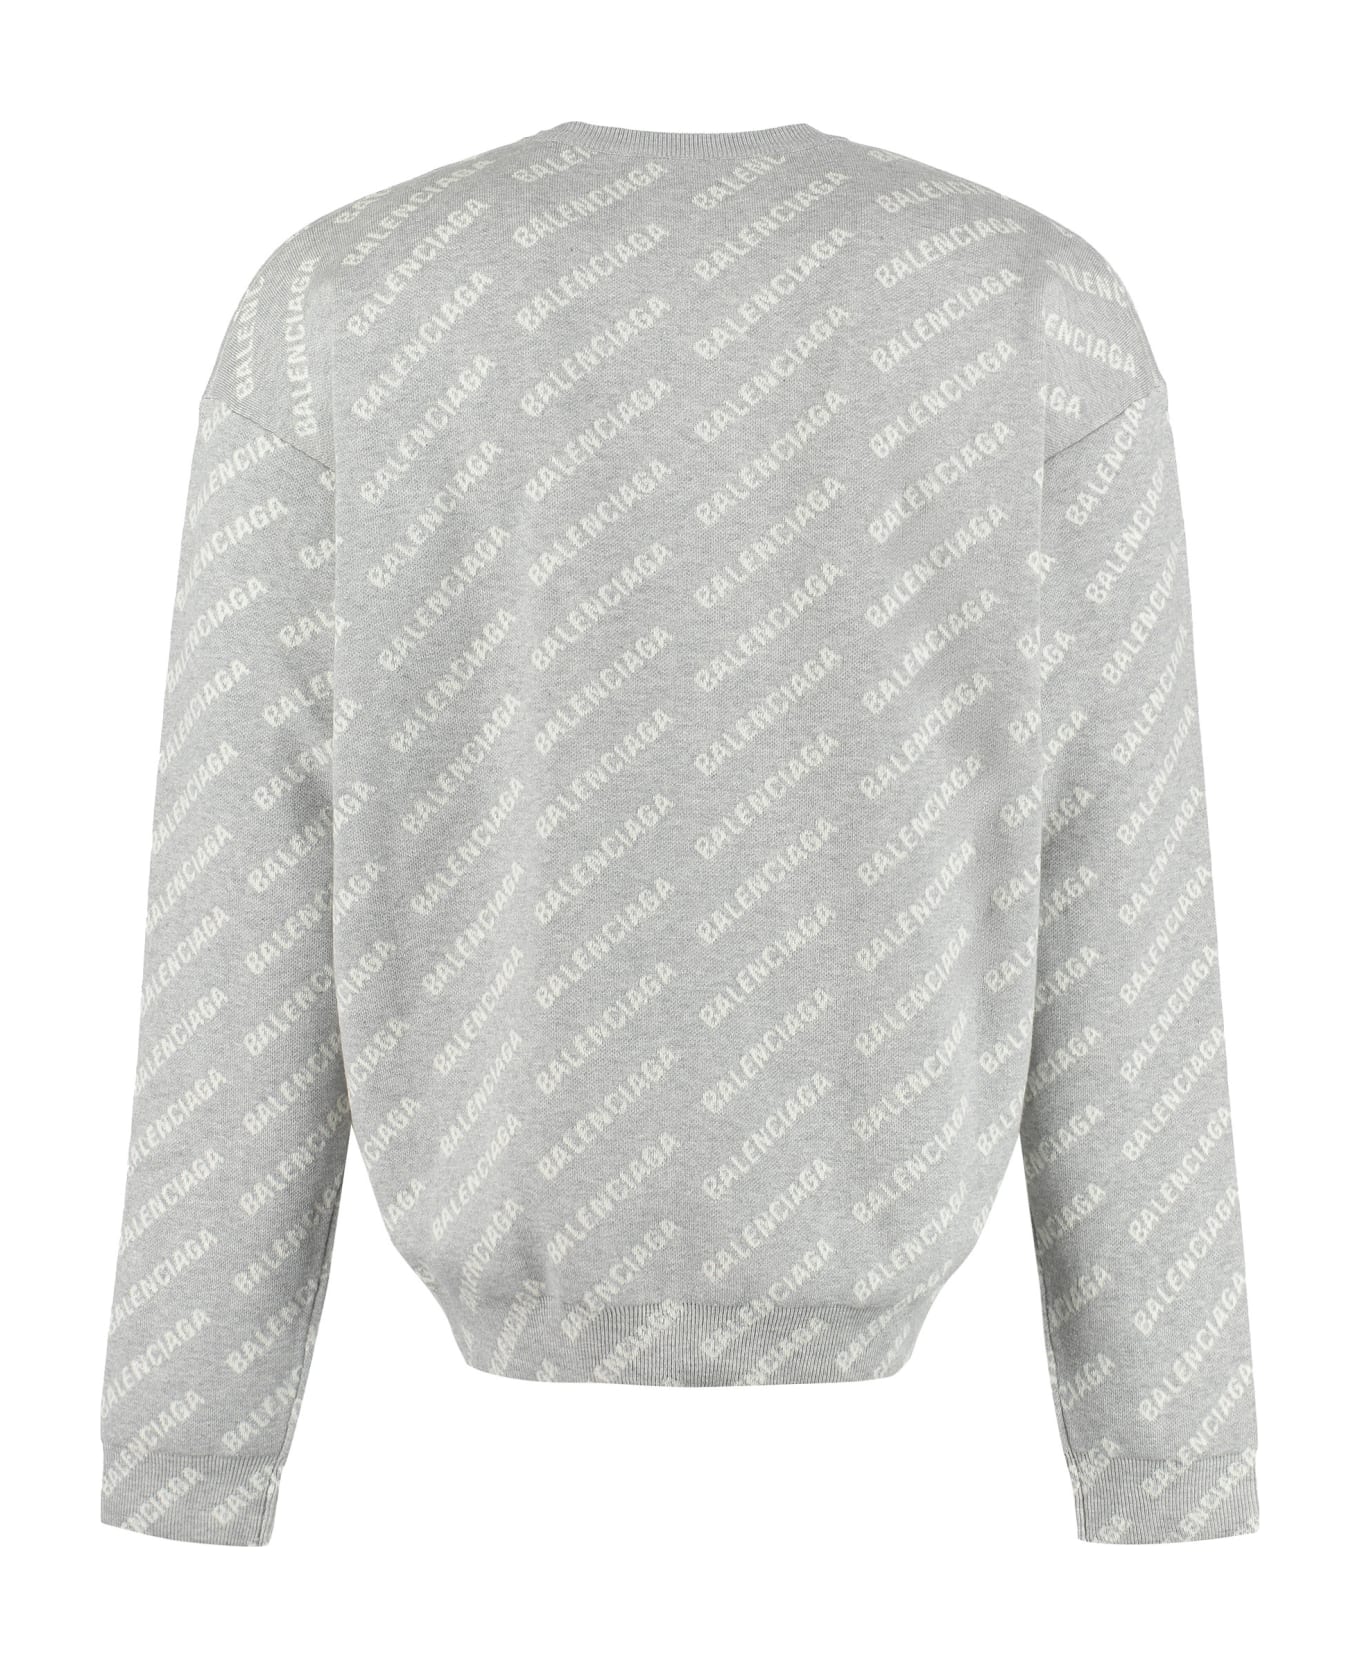 Balenciaga All Over Logo Crew-neck Sweater - Grey/white